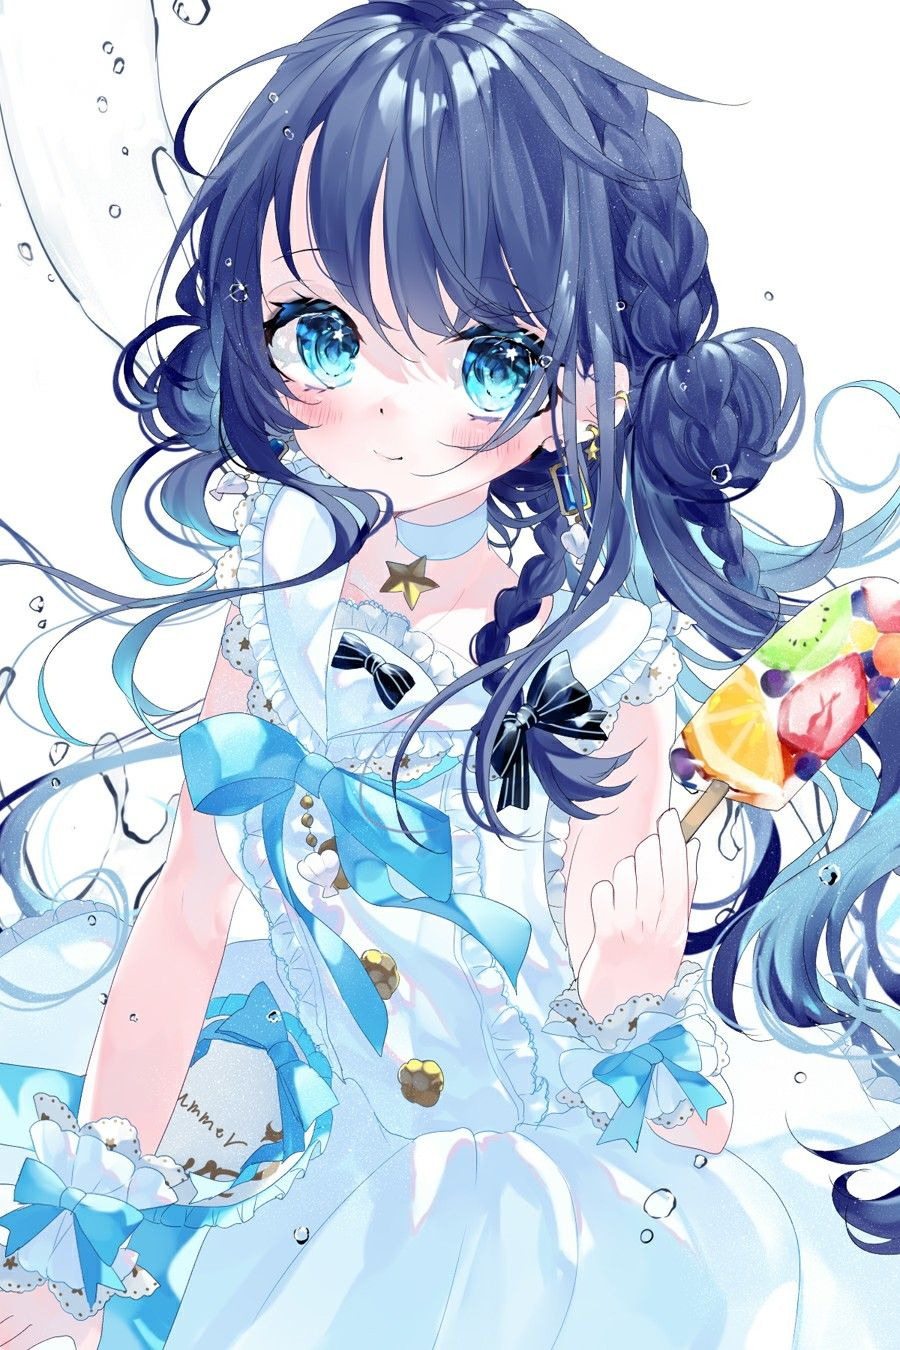 Xả ảnh anime - Anime girl tóc xanh dương(1) - Wattpad